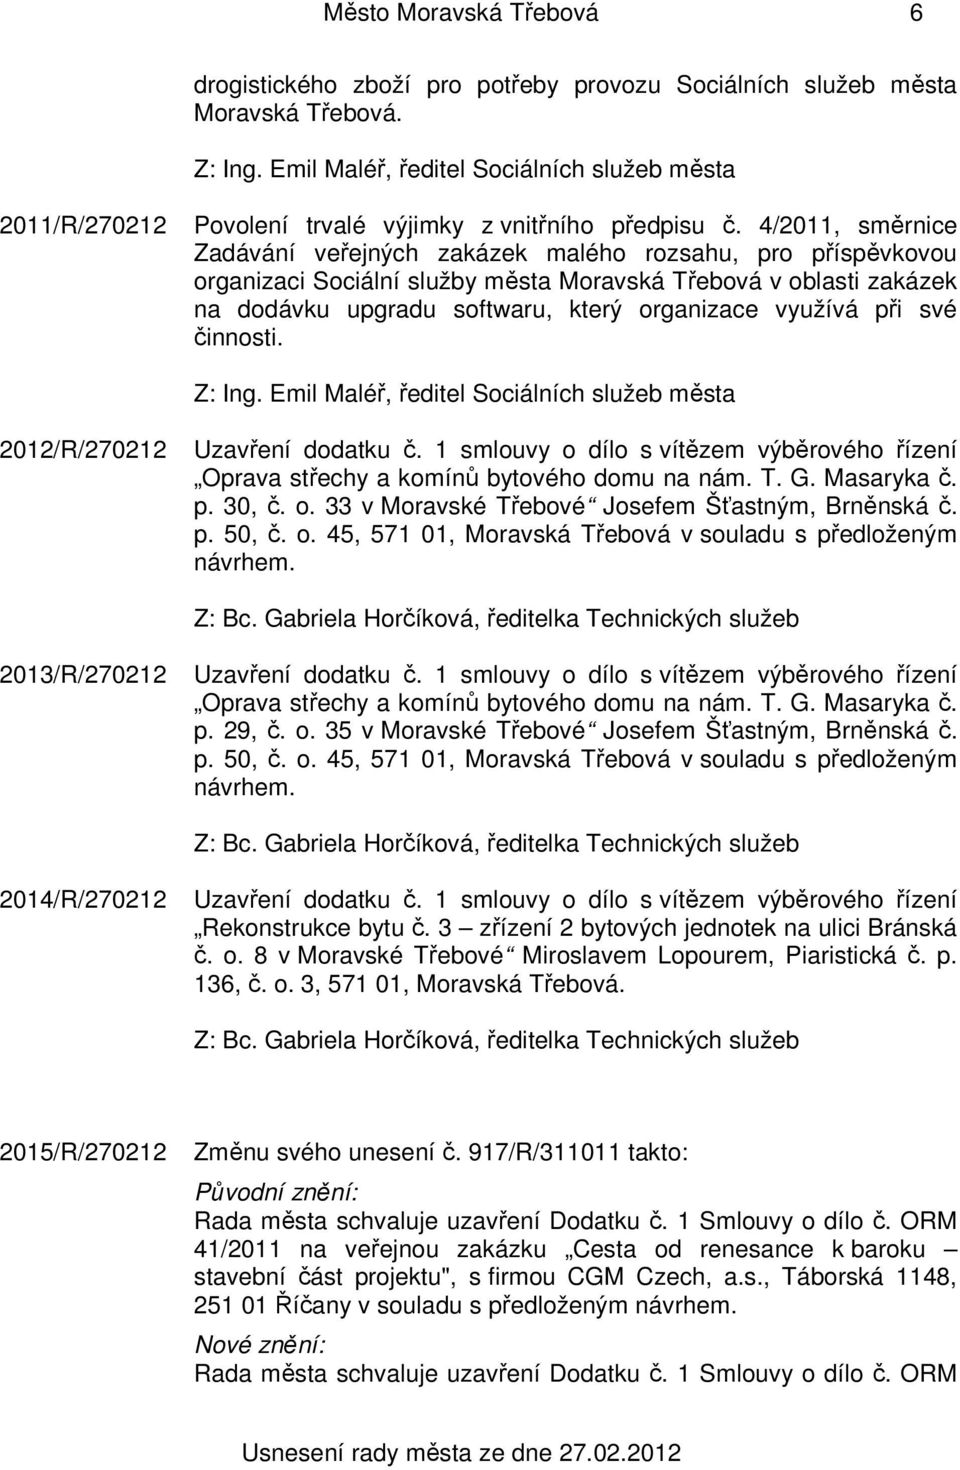 4/2011, směrnice Zadávání veřejných zakázek malého rozsahu, pro příspěvkovou organizaci Sociální služby města Moravská Třebová v oblasti zakázek na dodávku upgradu softwaru, který organizace využívá